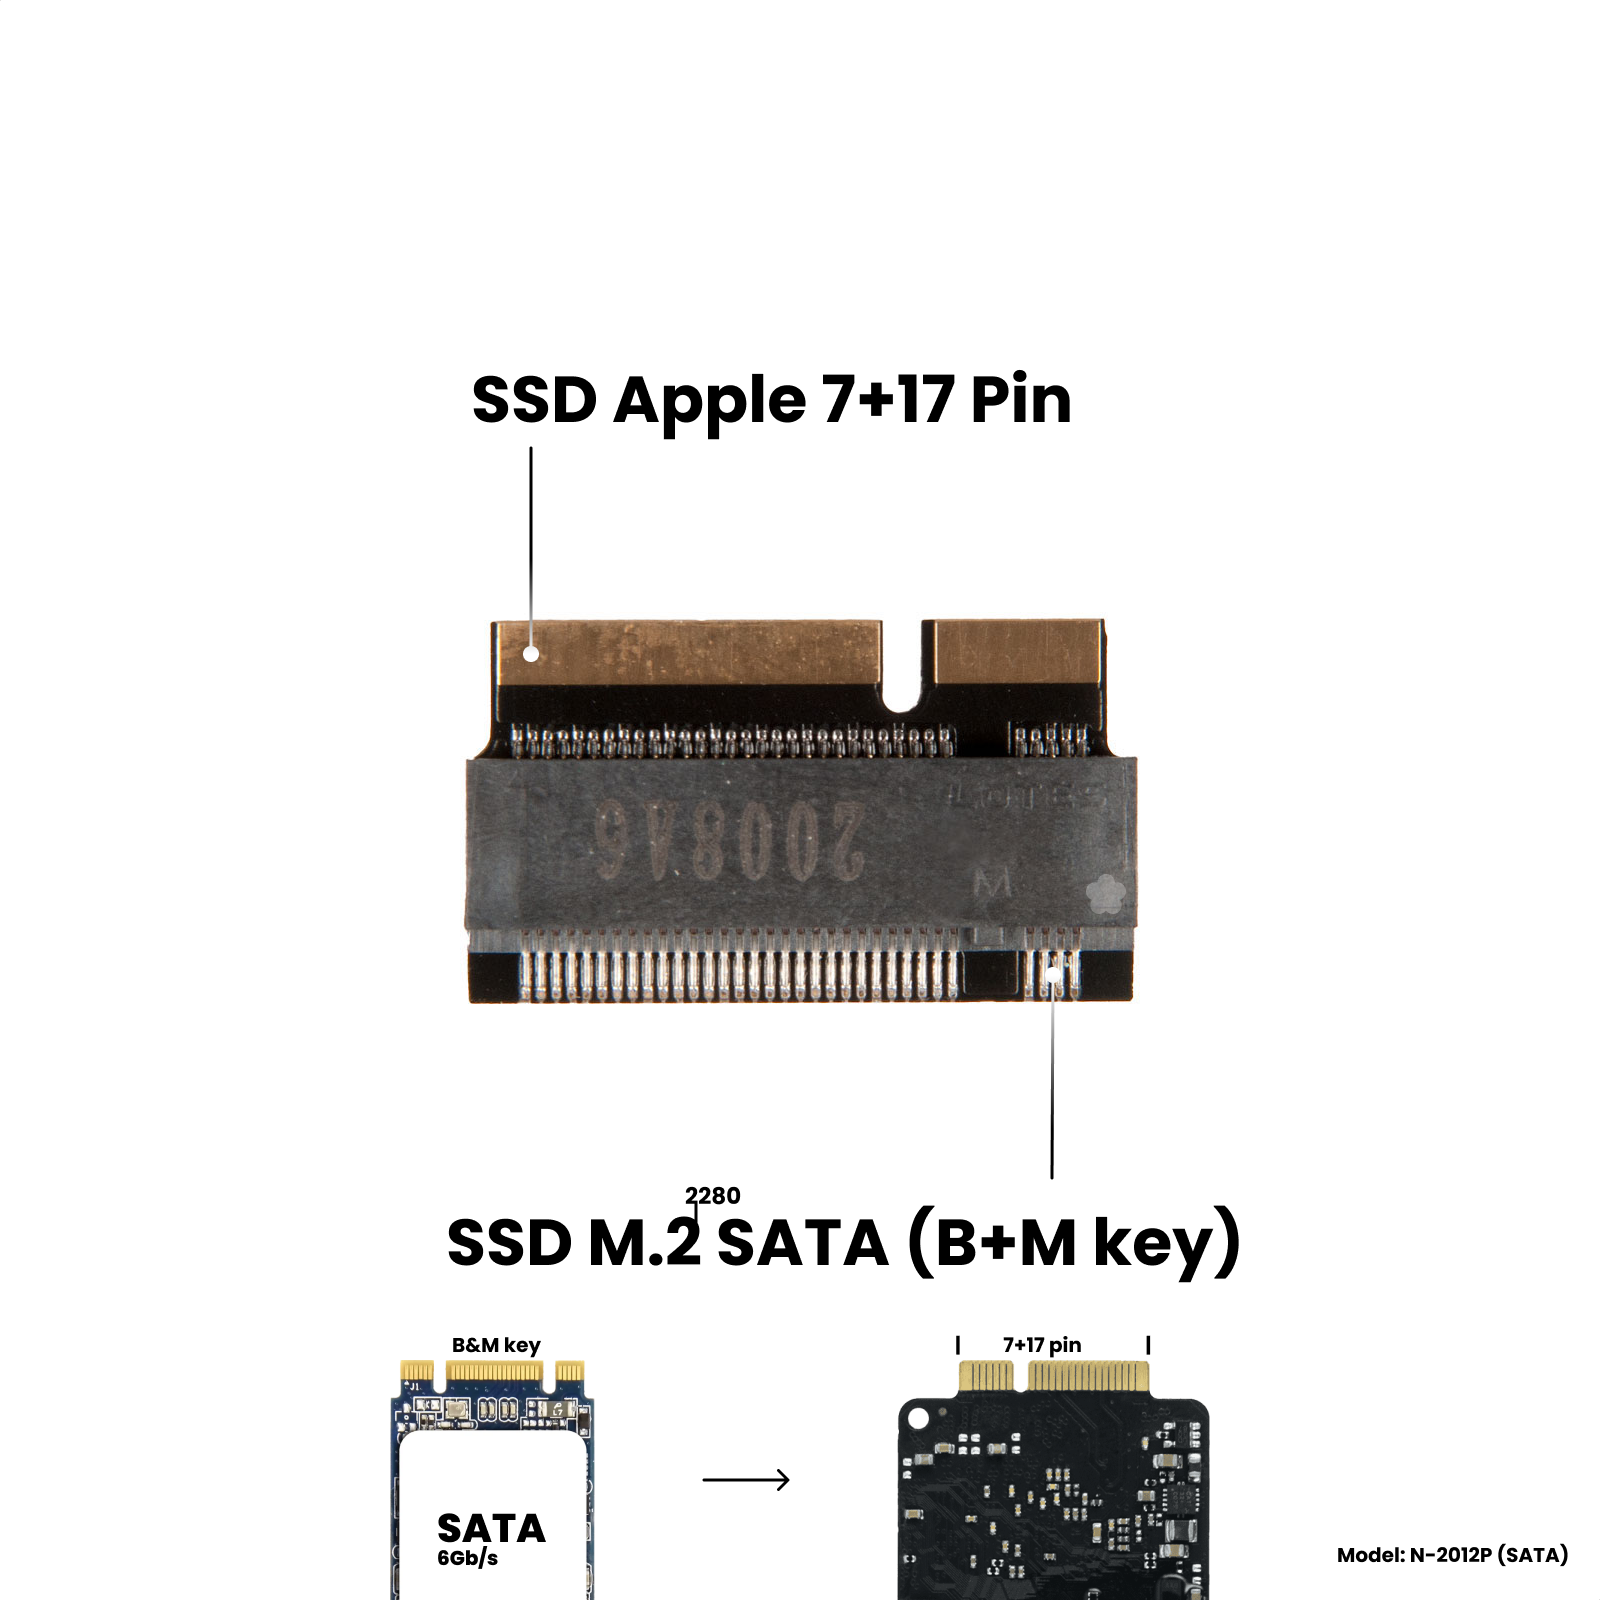 Адаптер-переходник для установки SSD M.2 2280 SATA (B+M key) в разъем 7+17 Pin на MacBook Pro Retina 13/15" iMac 21.5/27" Mid 2012 - Early 2013